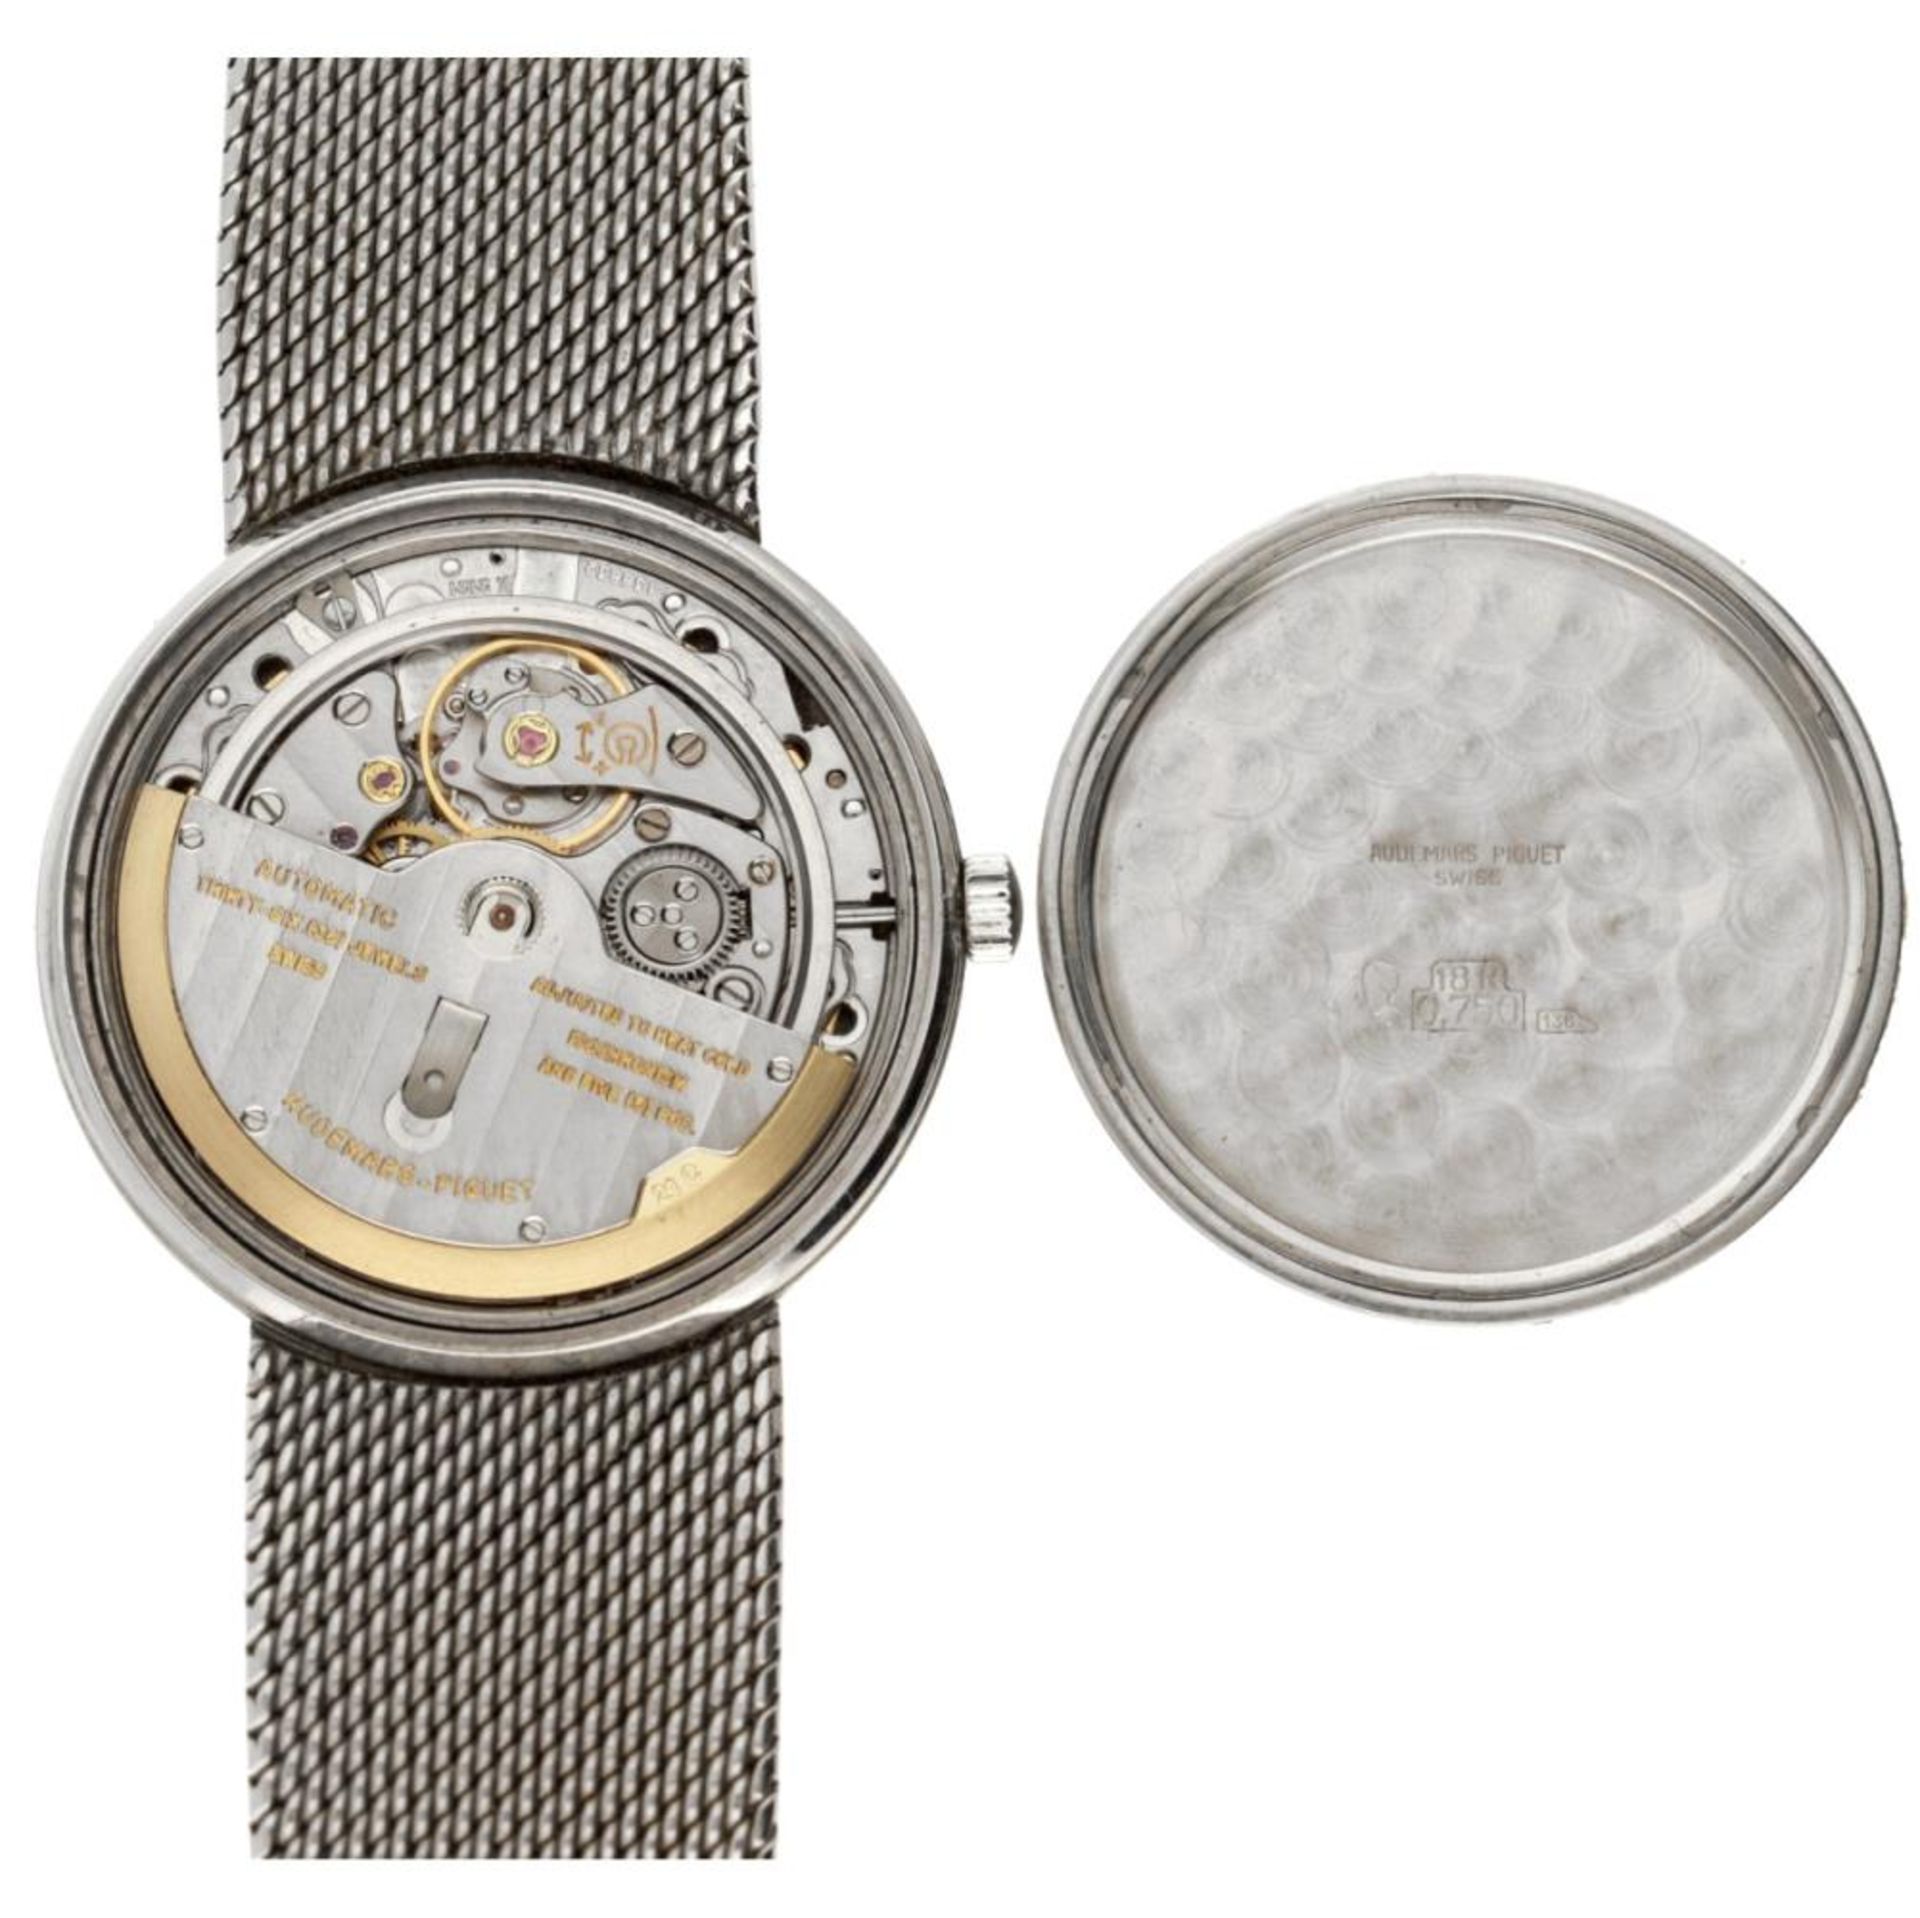 Audemars Piguet 84016 - Men's watch - approx. 1967. - Image 8 of 8